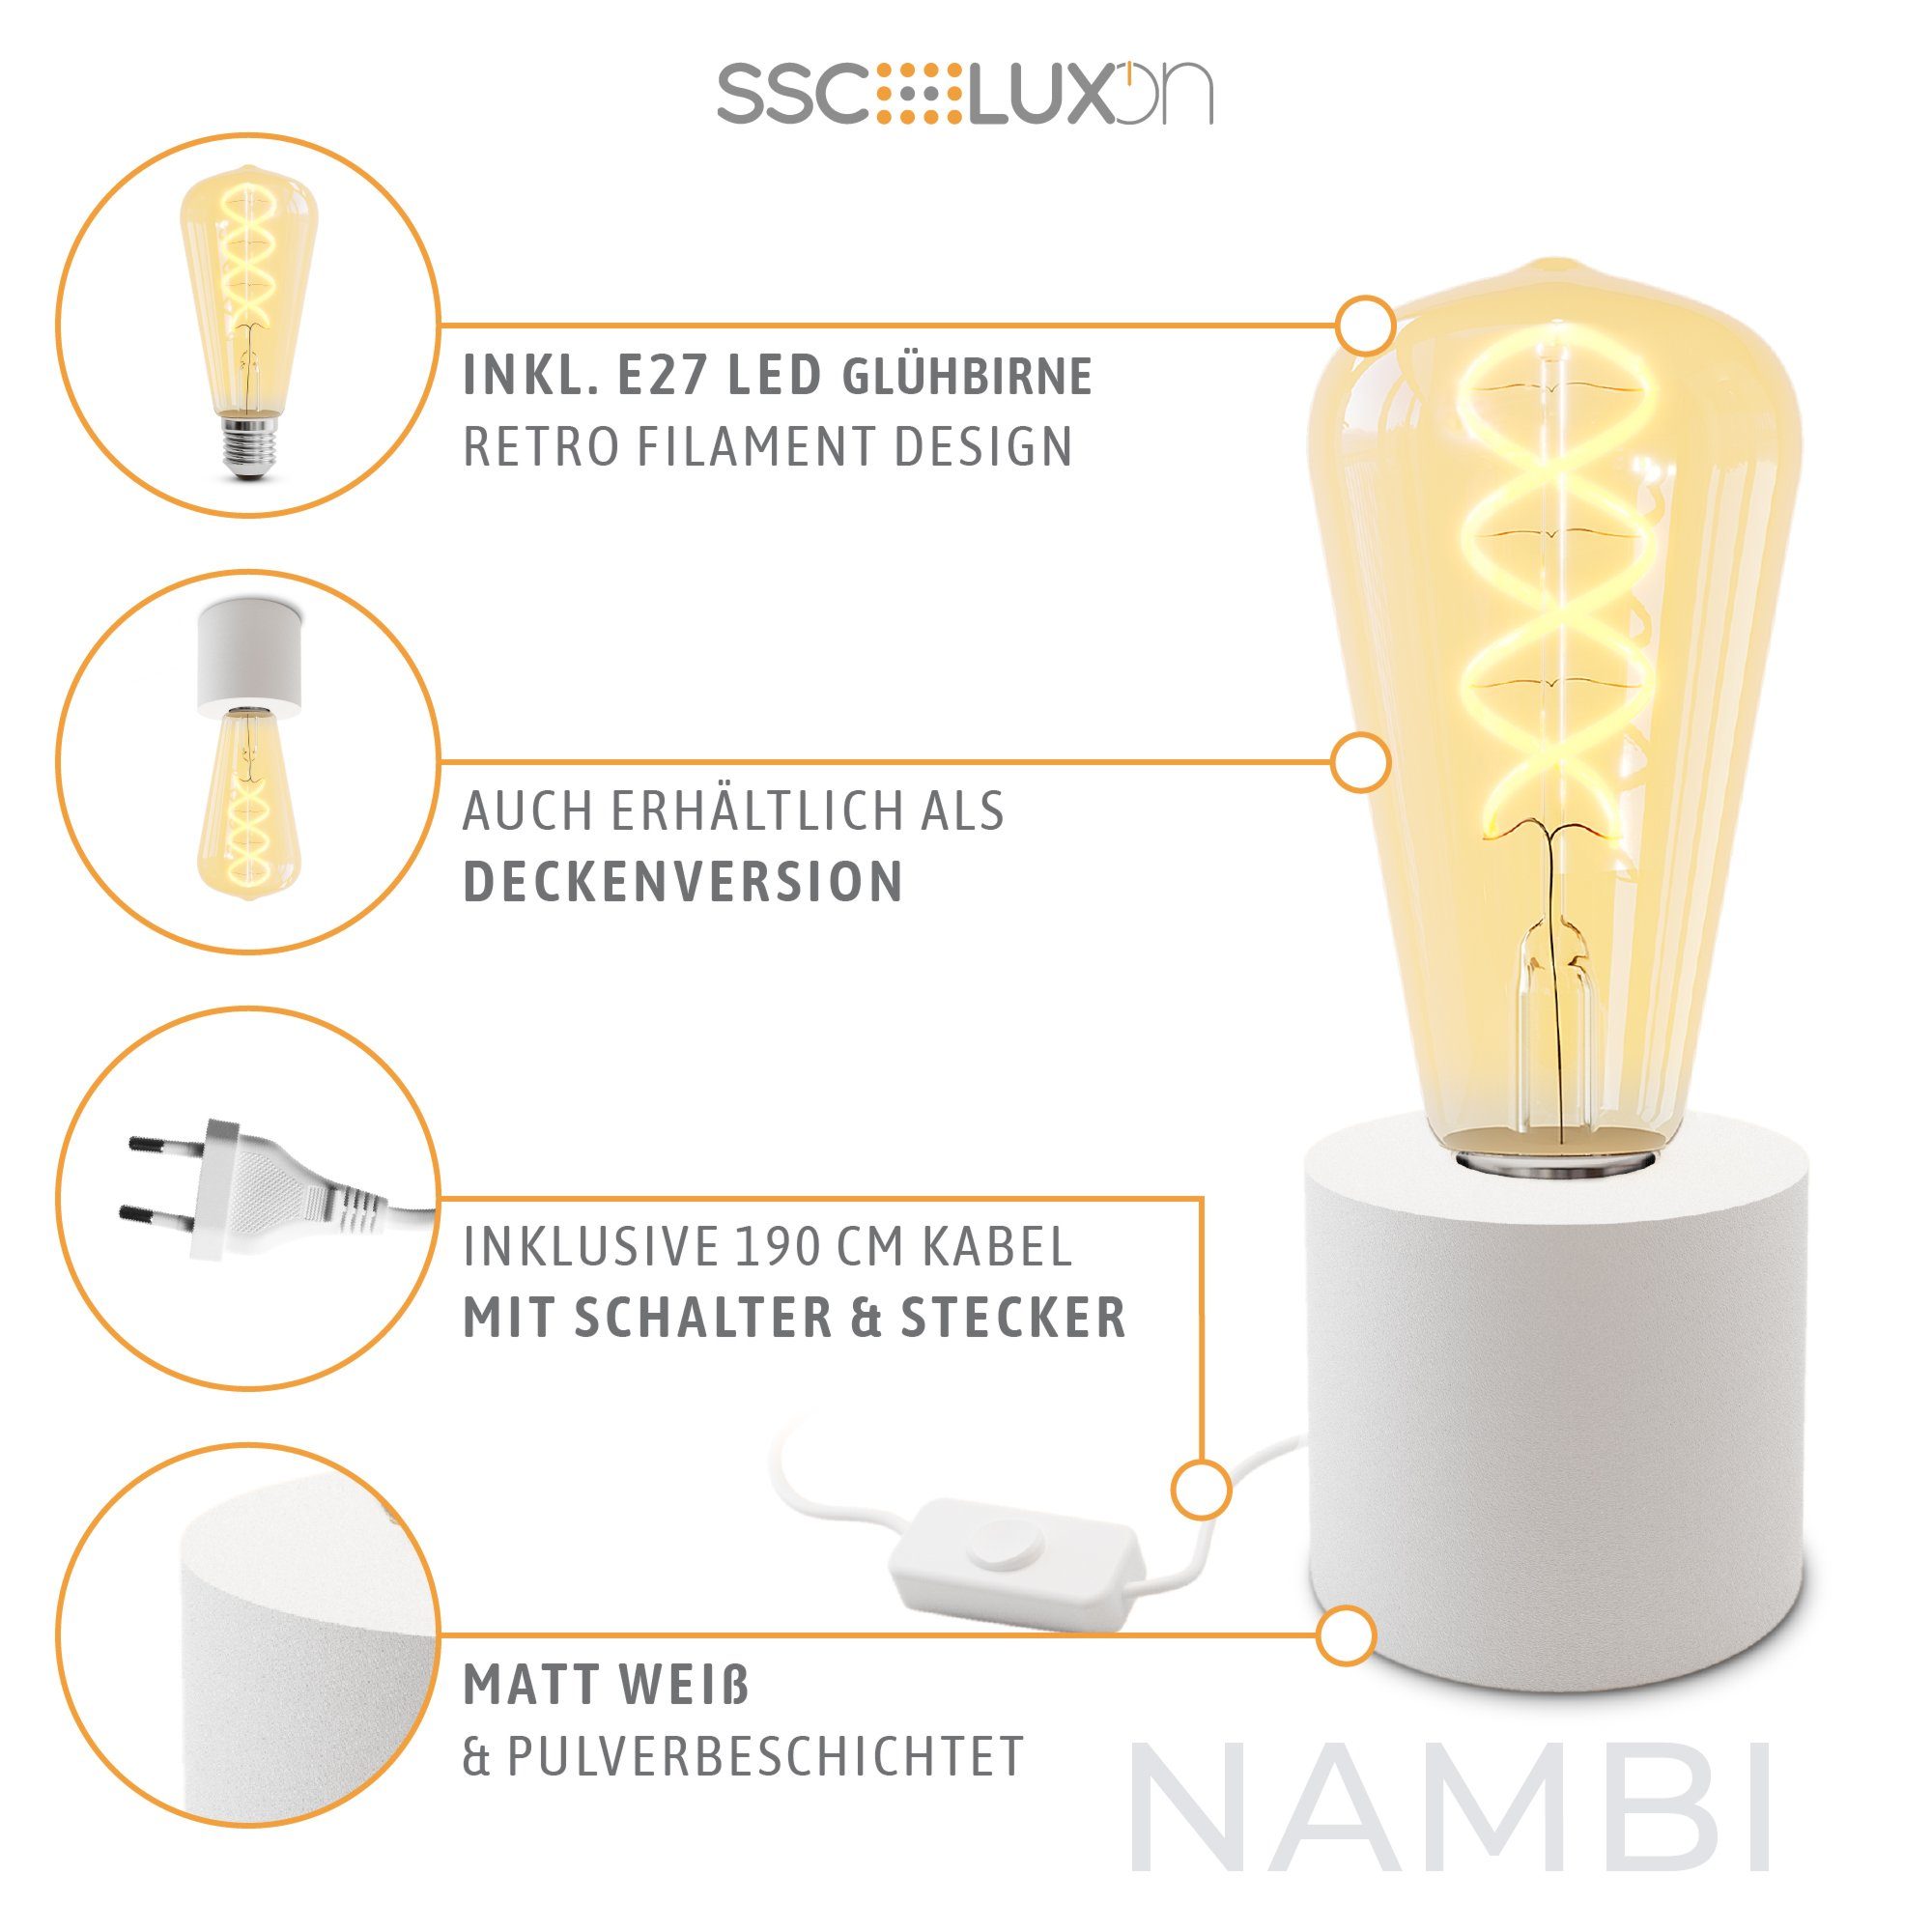 LED mit Tischleuchte Edison weiss Stecker E27, NAMBI & Kabel Wand- LED & Warmweiß Bilderleuchte SSC-LUXon